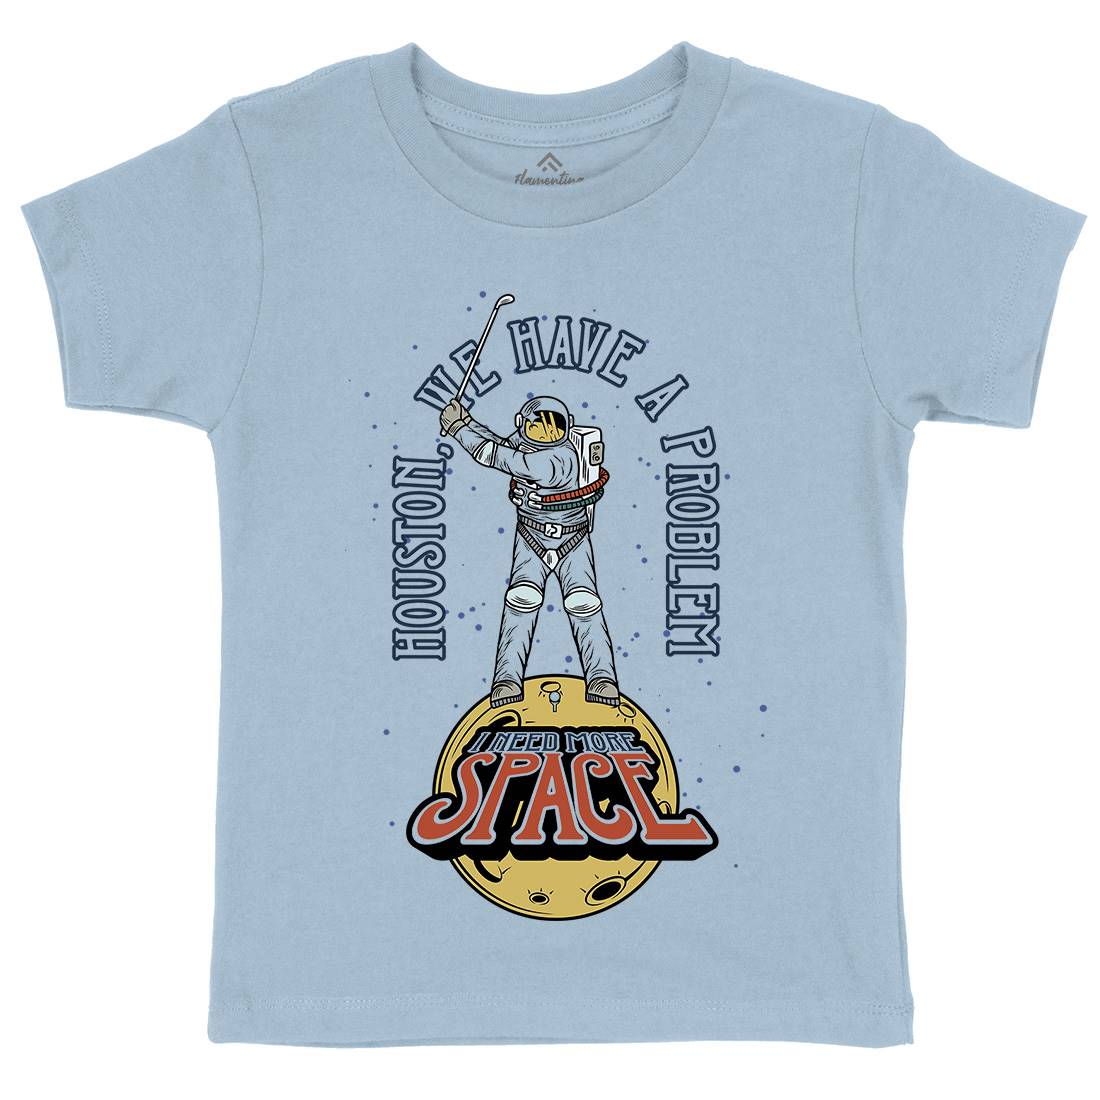 Problem Kids Crew Neck T-Shirt Space D980